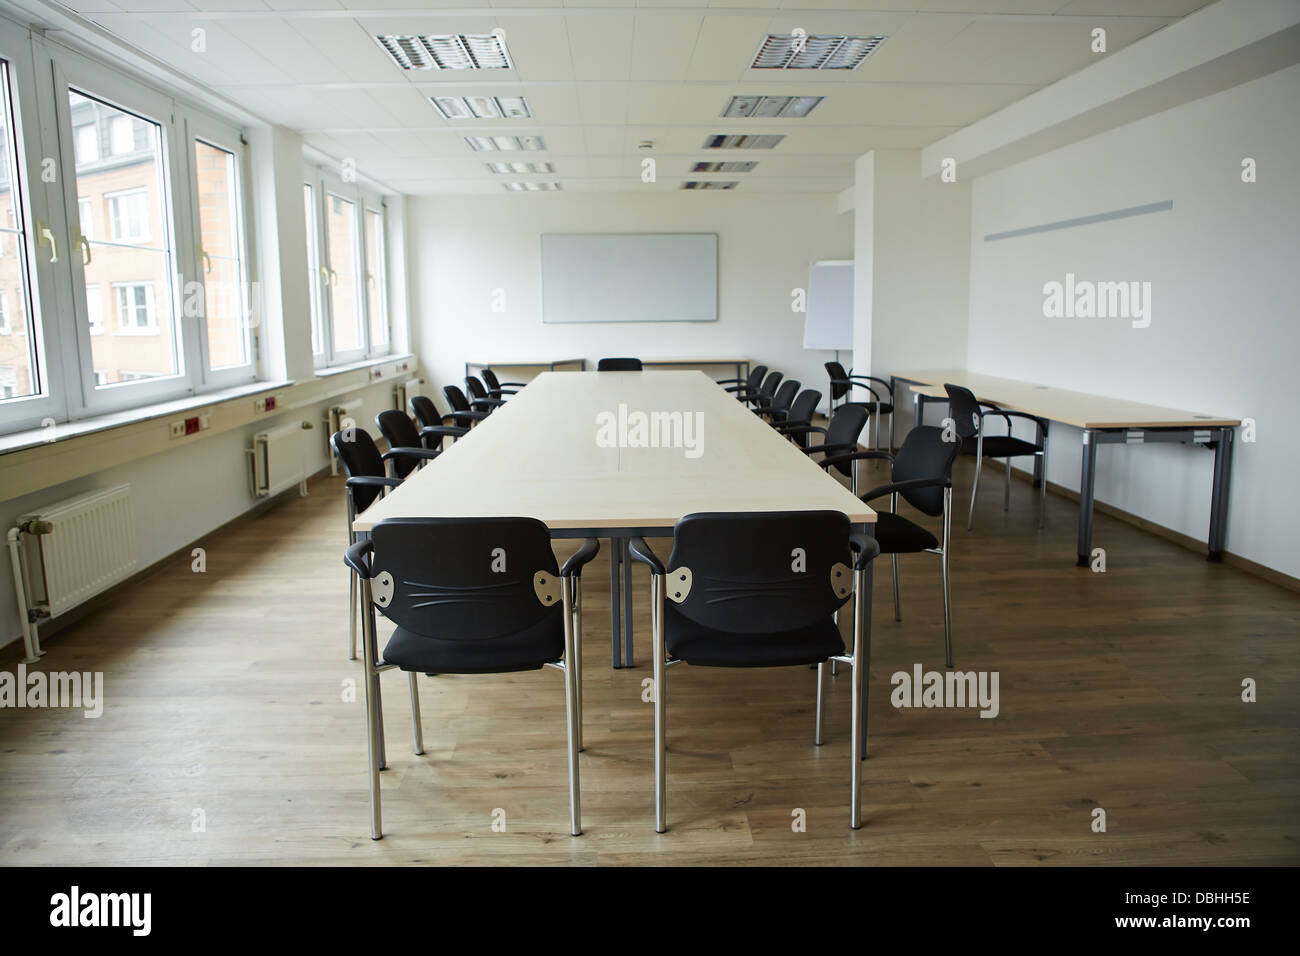 Leere saubere Konferenzraum mit Whiteboard und Tische und Stühle Stockfoto